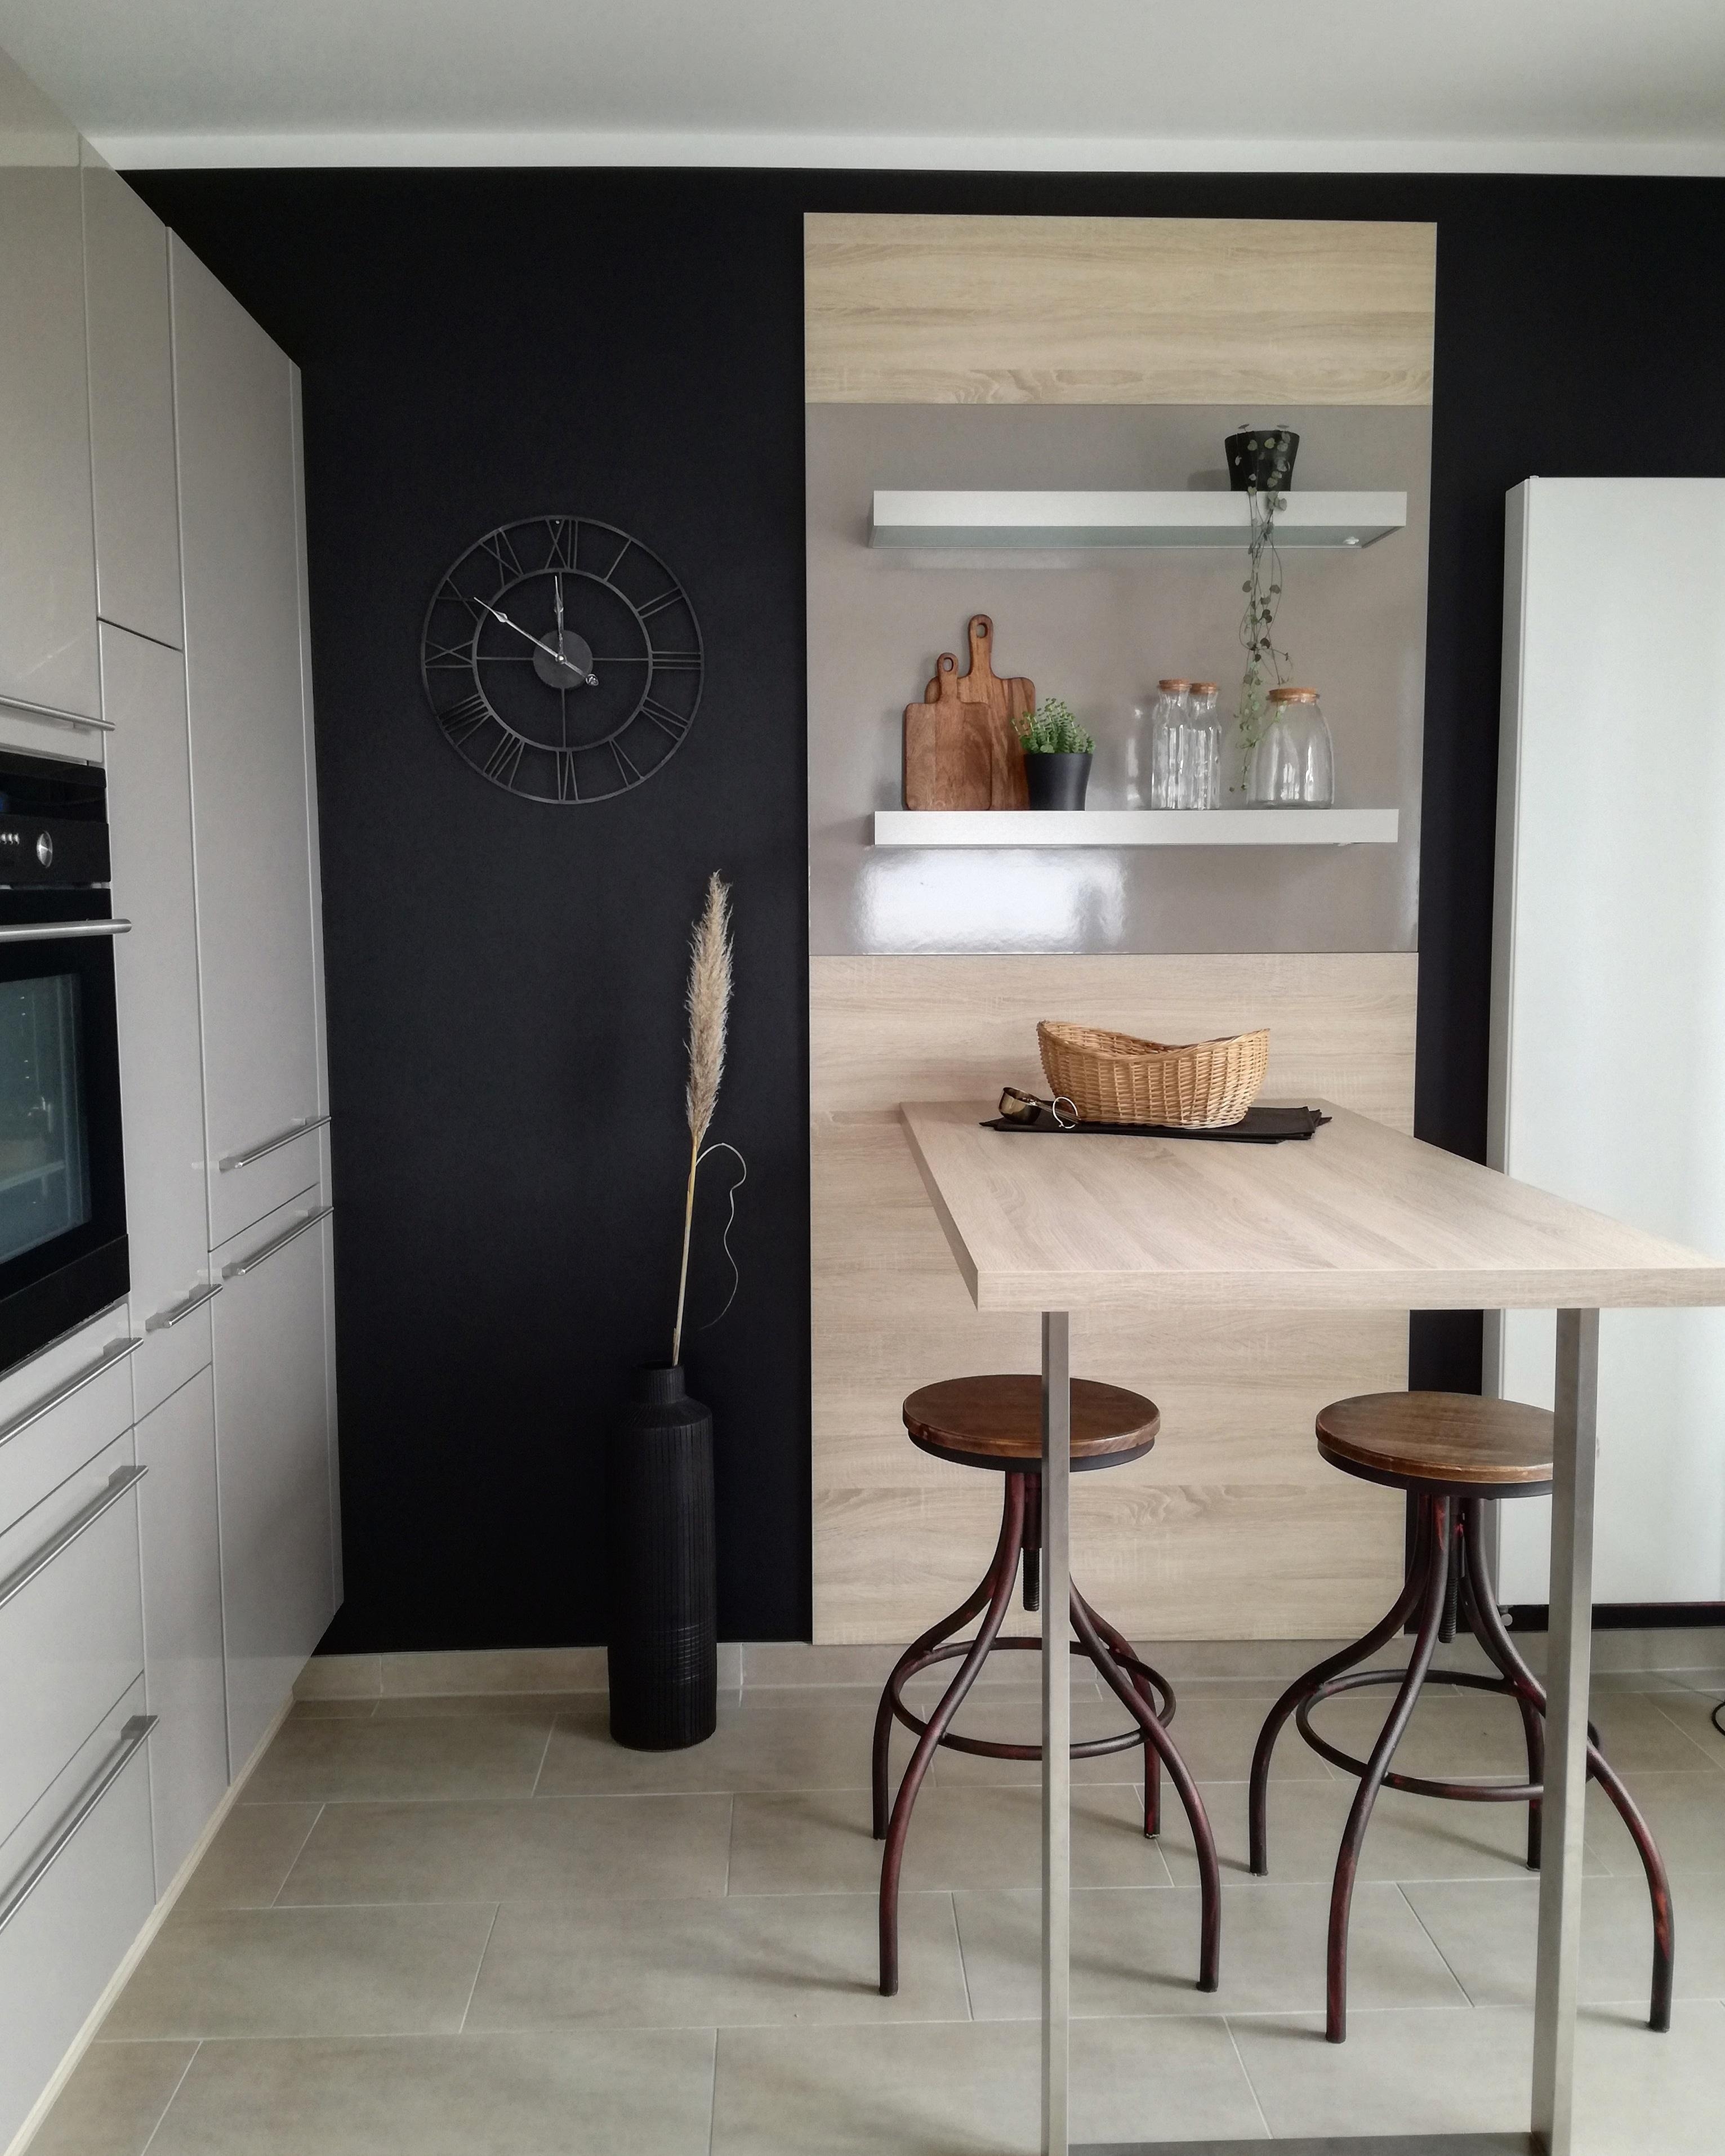 Ich liebe den Kontrast der schwarzen Wand zum hellen Holz der Küche 😊 #schwarzewand #küche #tisch #hocker #industrial